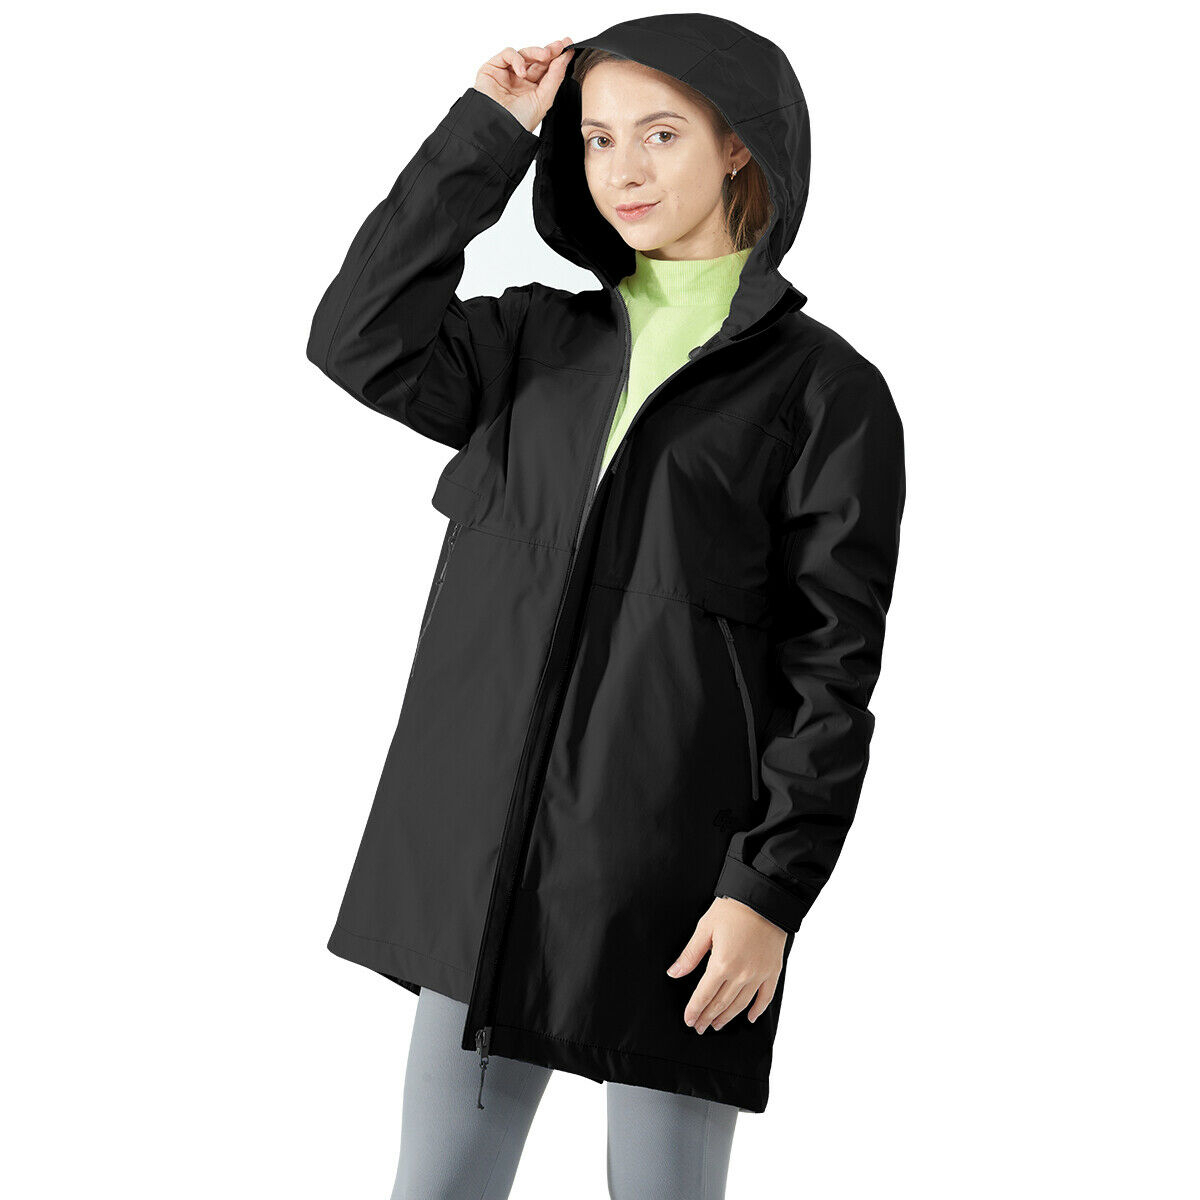 Hooded Women's Wind & Waterproof Trench Rain Jacket-Black-S - Coats ...